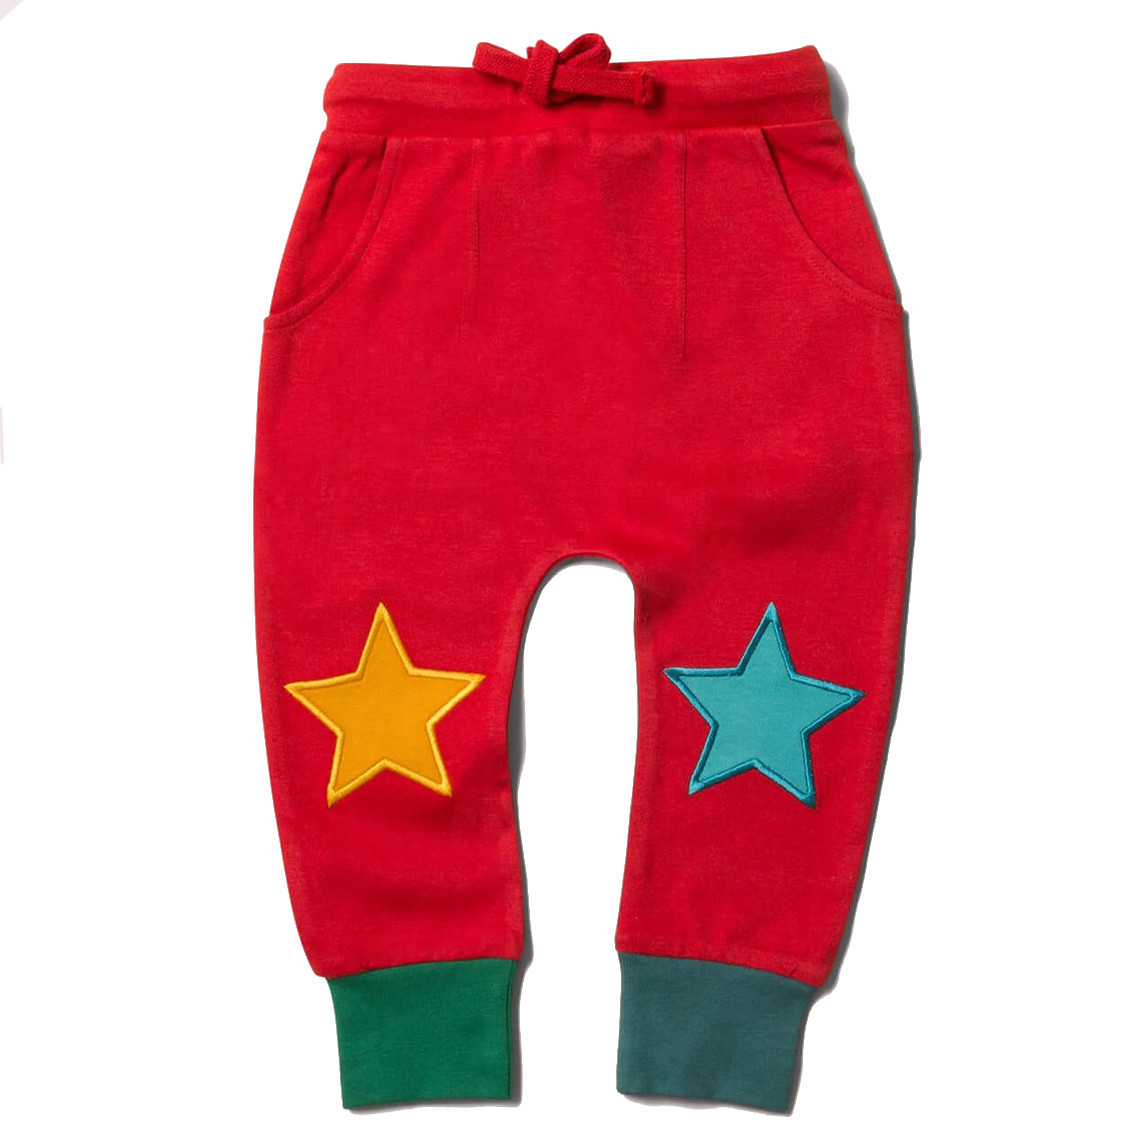 Pantaloni comodi Star per bambini in puro Cotone Biologico Fairtrade